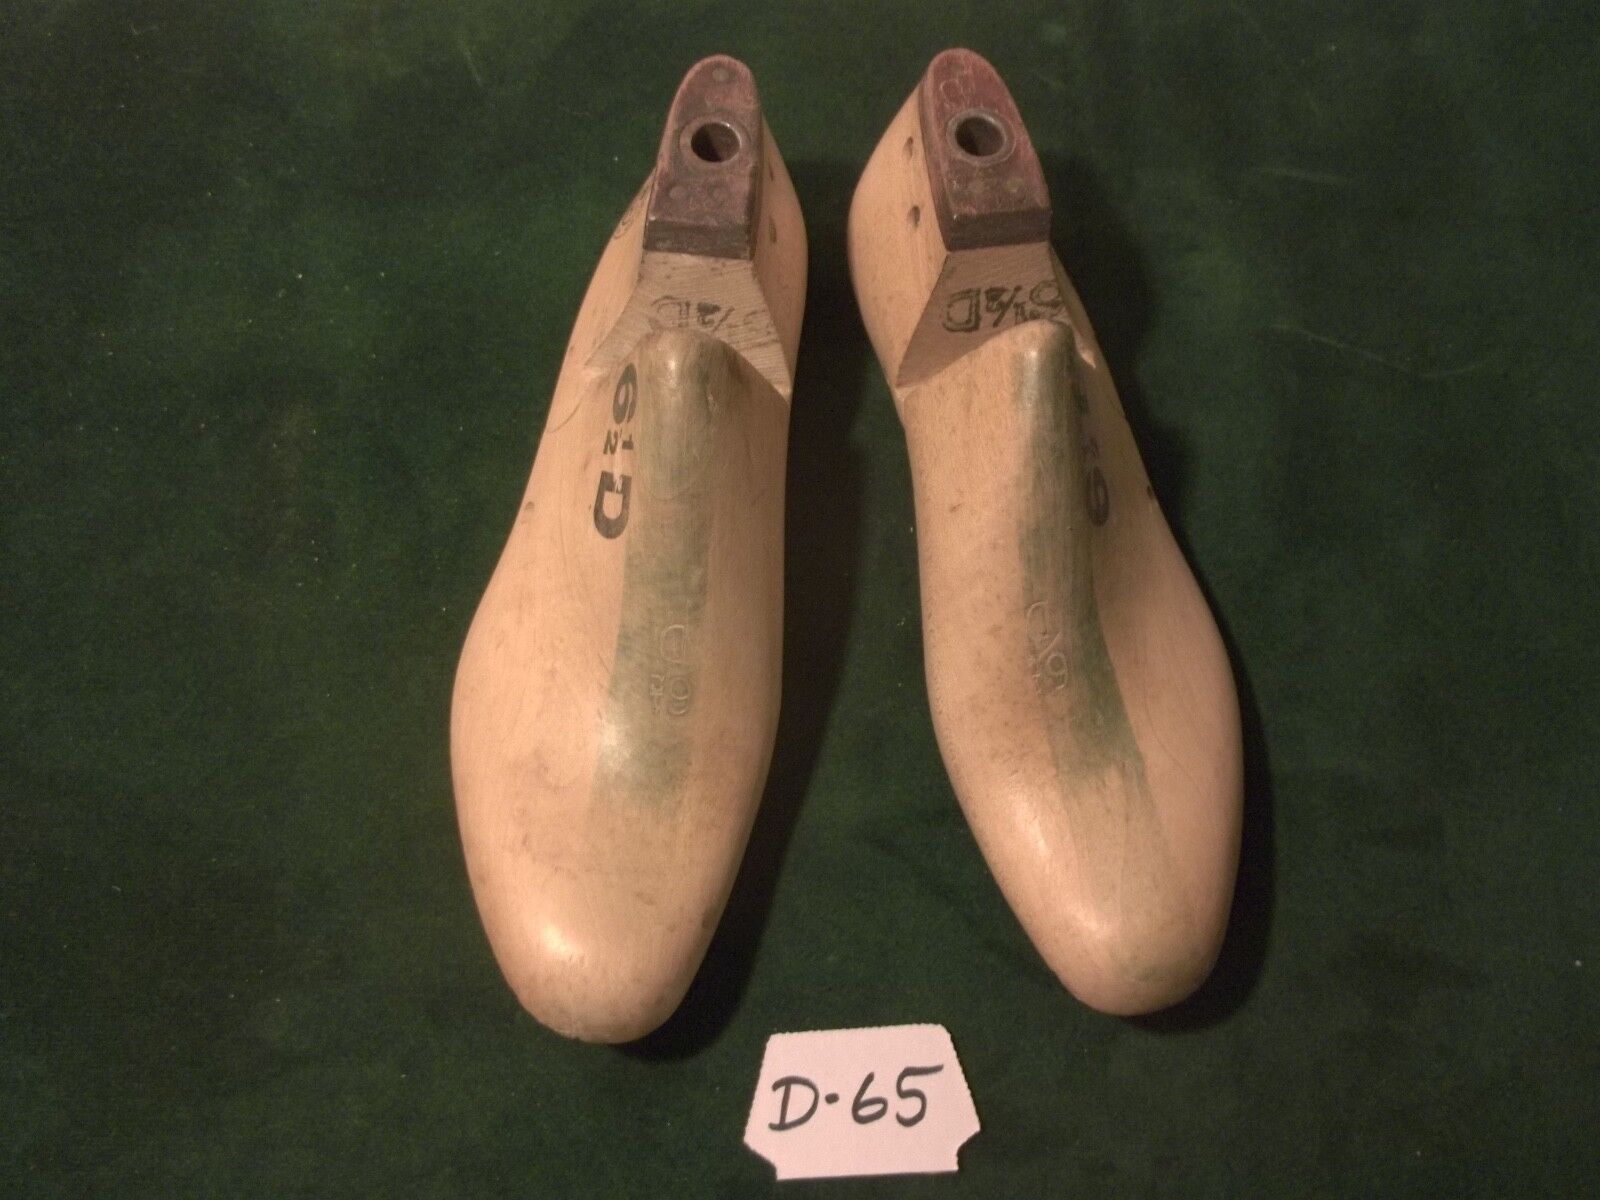 Pair Vintage1952 Size 6-1/2 D MORTON US NAVY Factory Industrial Shoe Lasts #D-65